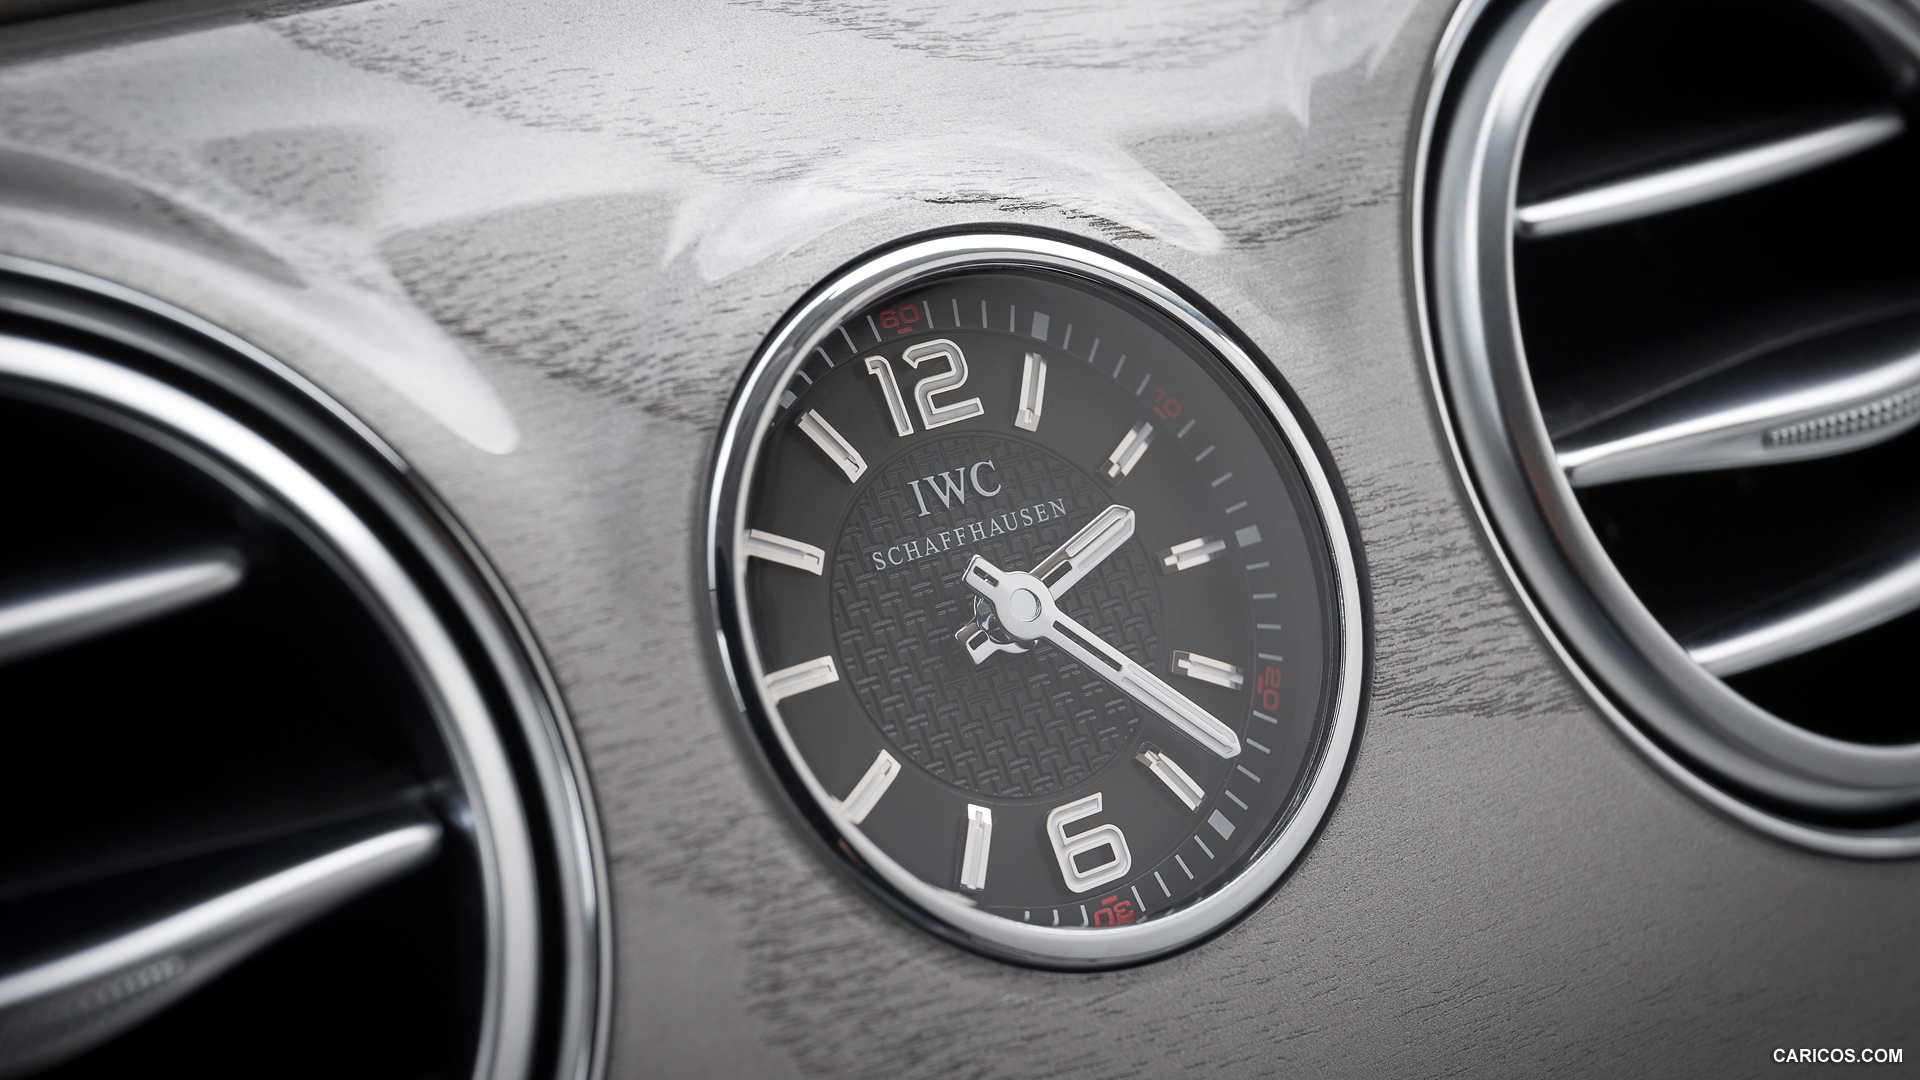 Mercedes-Benz S63 AMG W222 (2014) IWC Schaffhausen Dashboard Clock - Interior Detail, #43 of 102